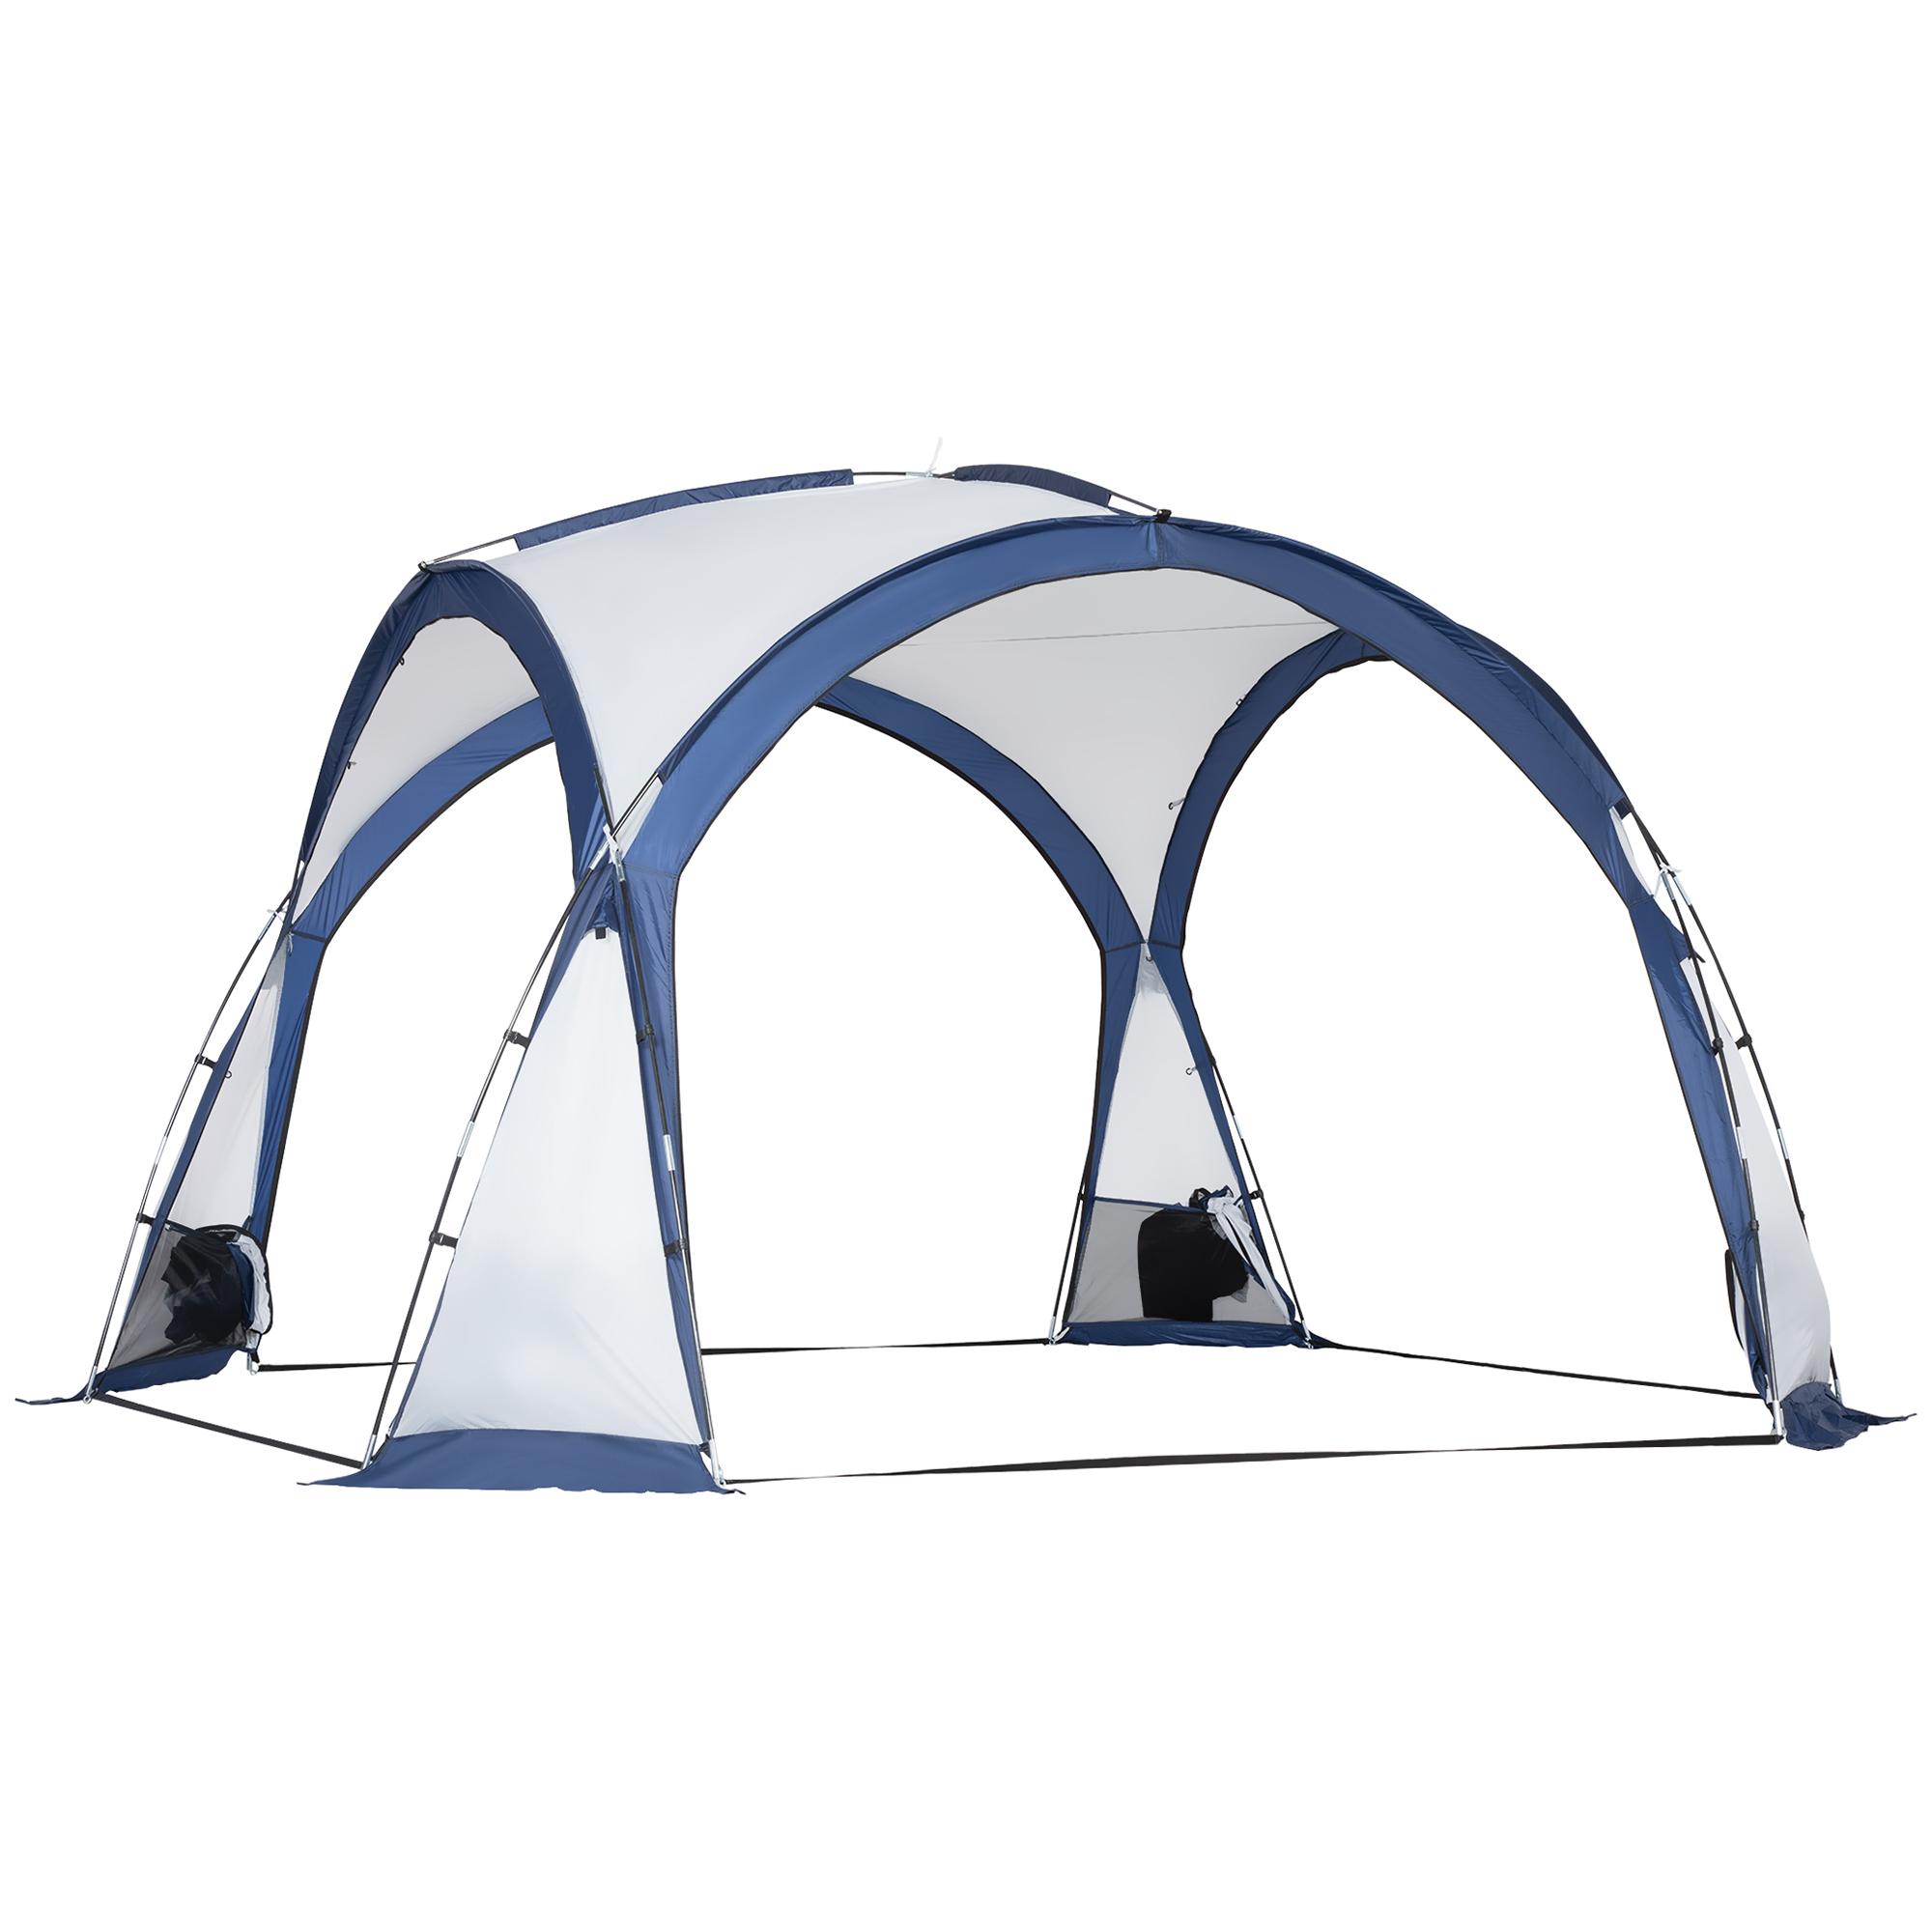 Toile pour tente de camping 280 gr/m²